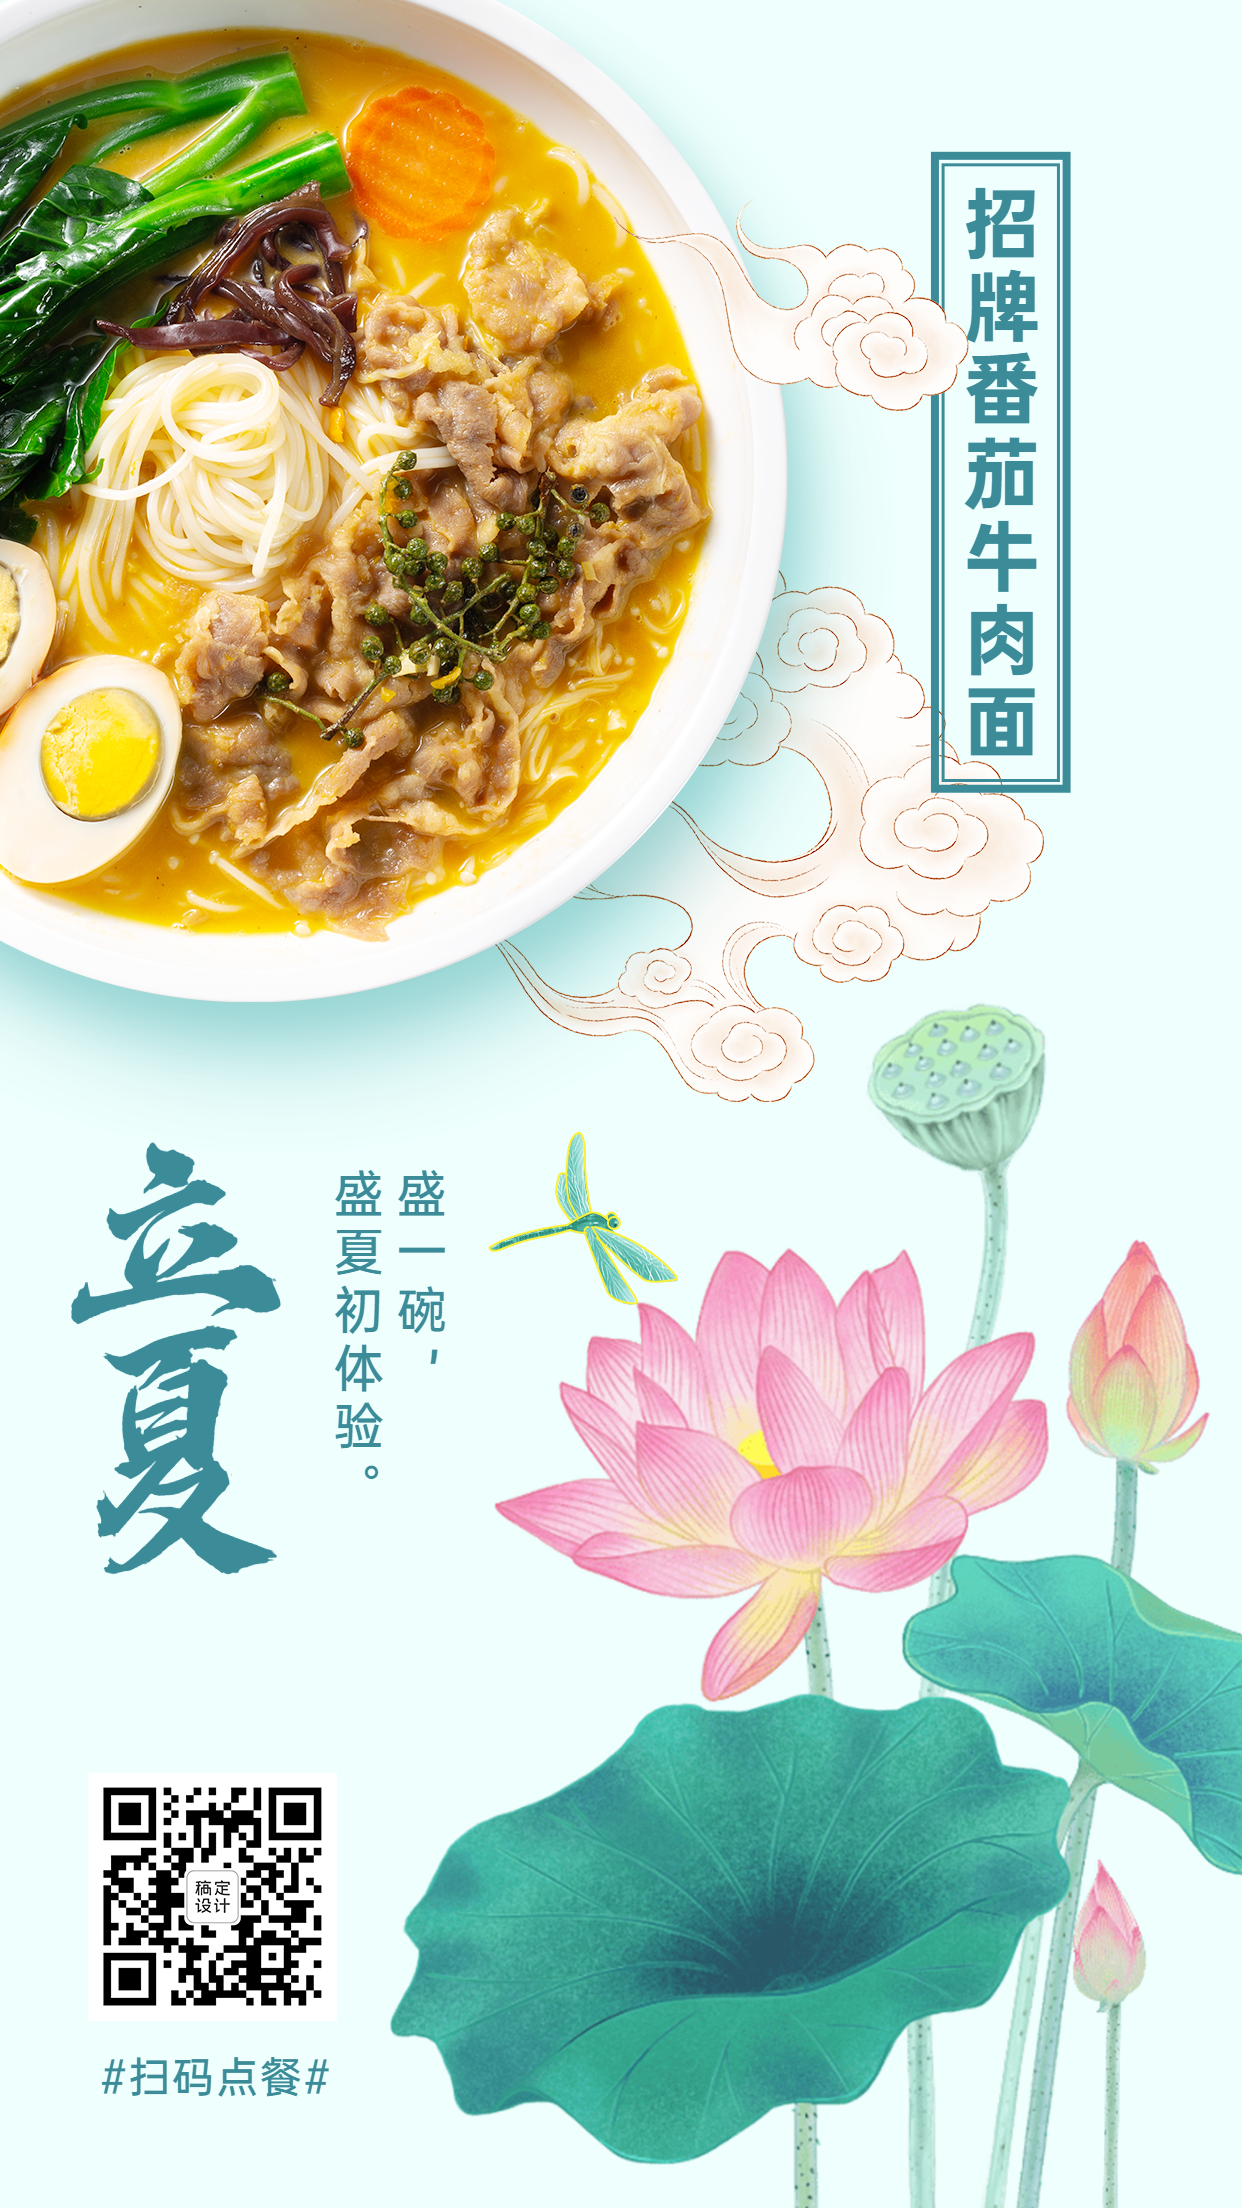 立夏中餐汤面类菜品展示手机海报预览效果